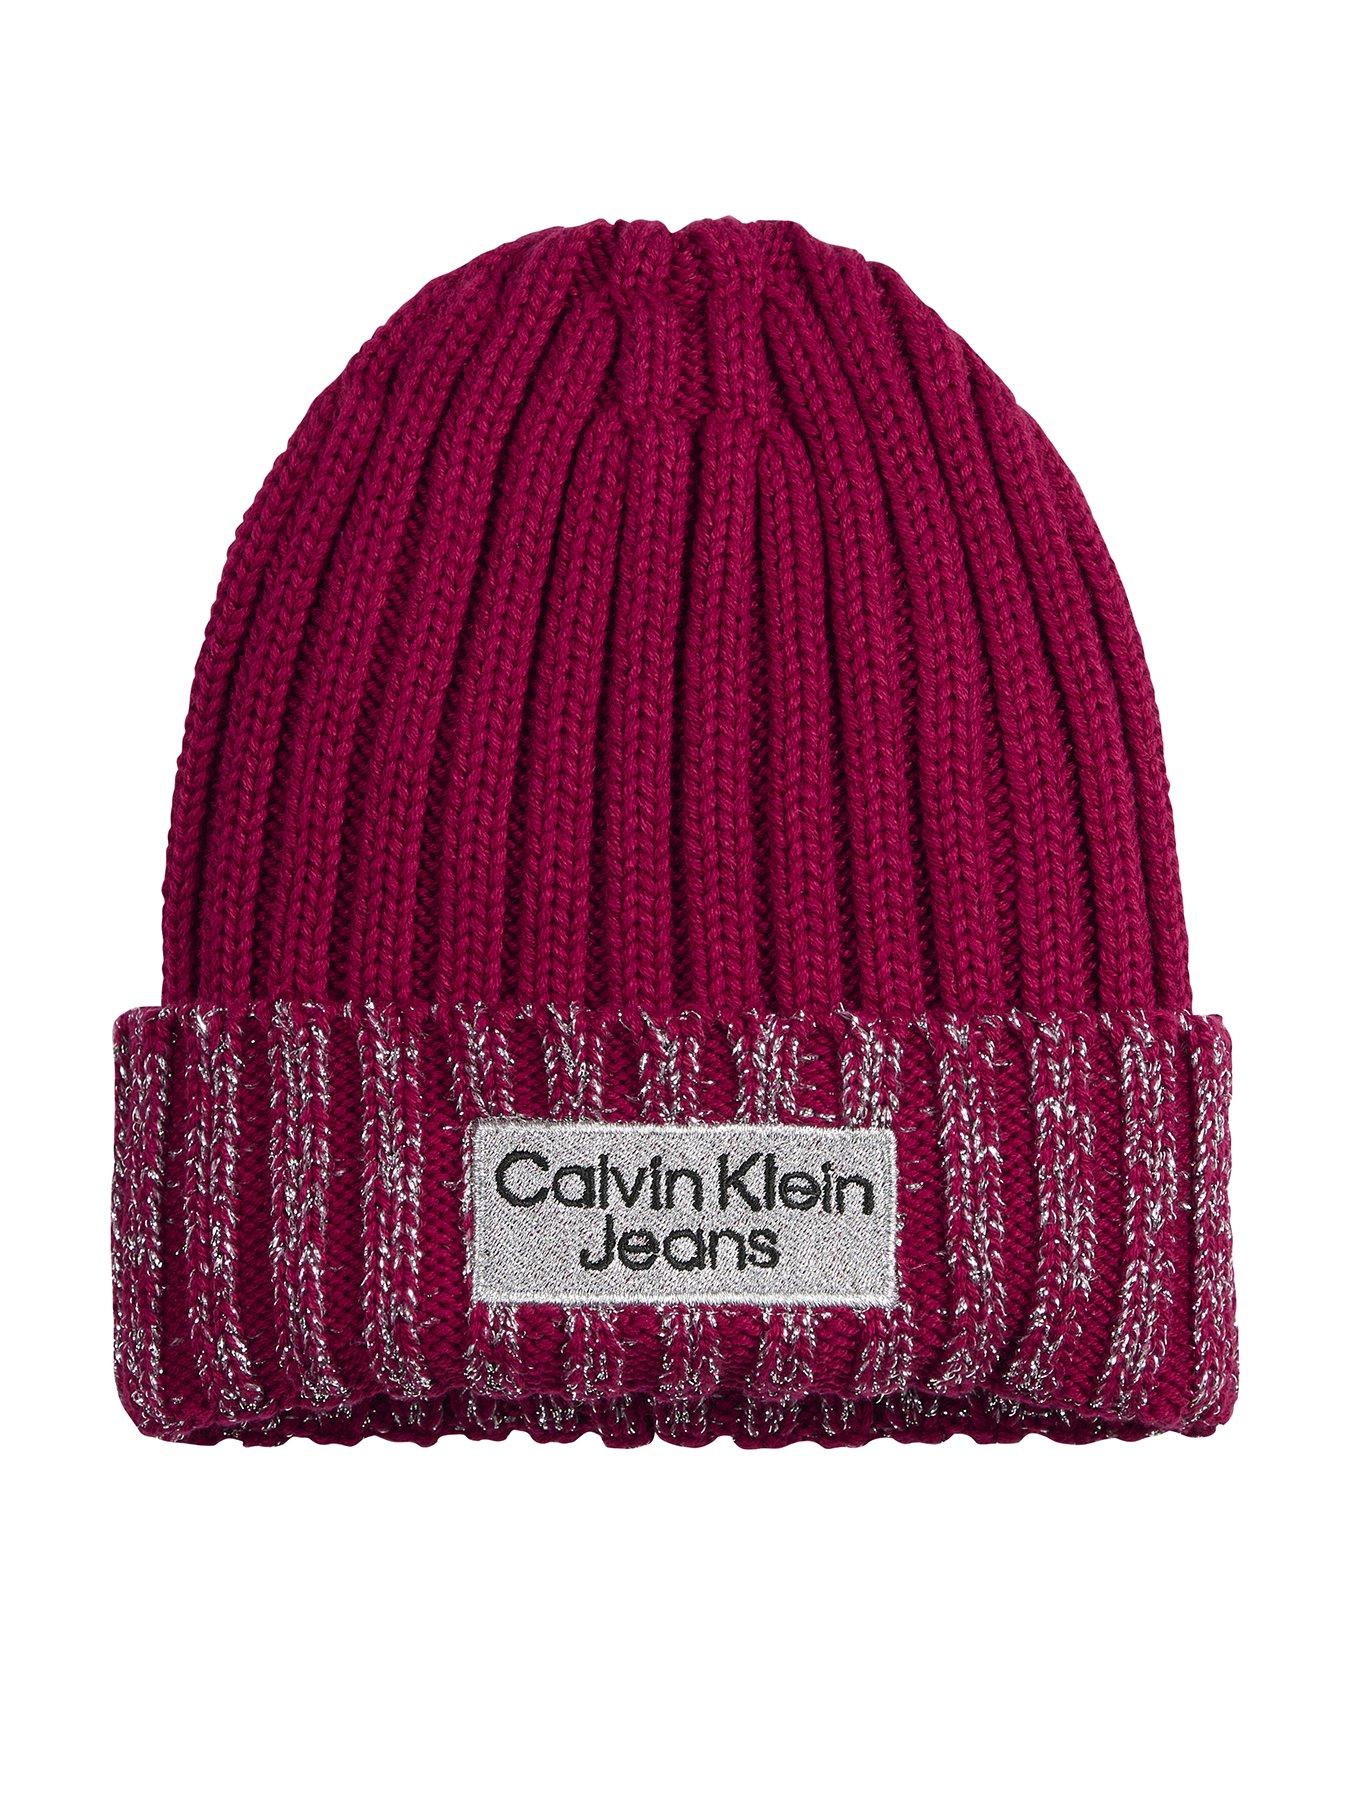 Calvin Klein Jeans beanie hat in pink